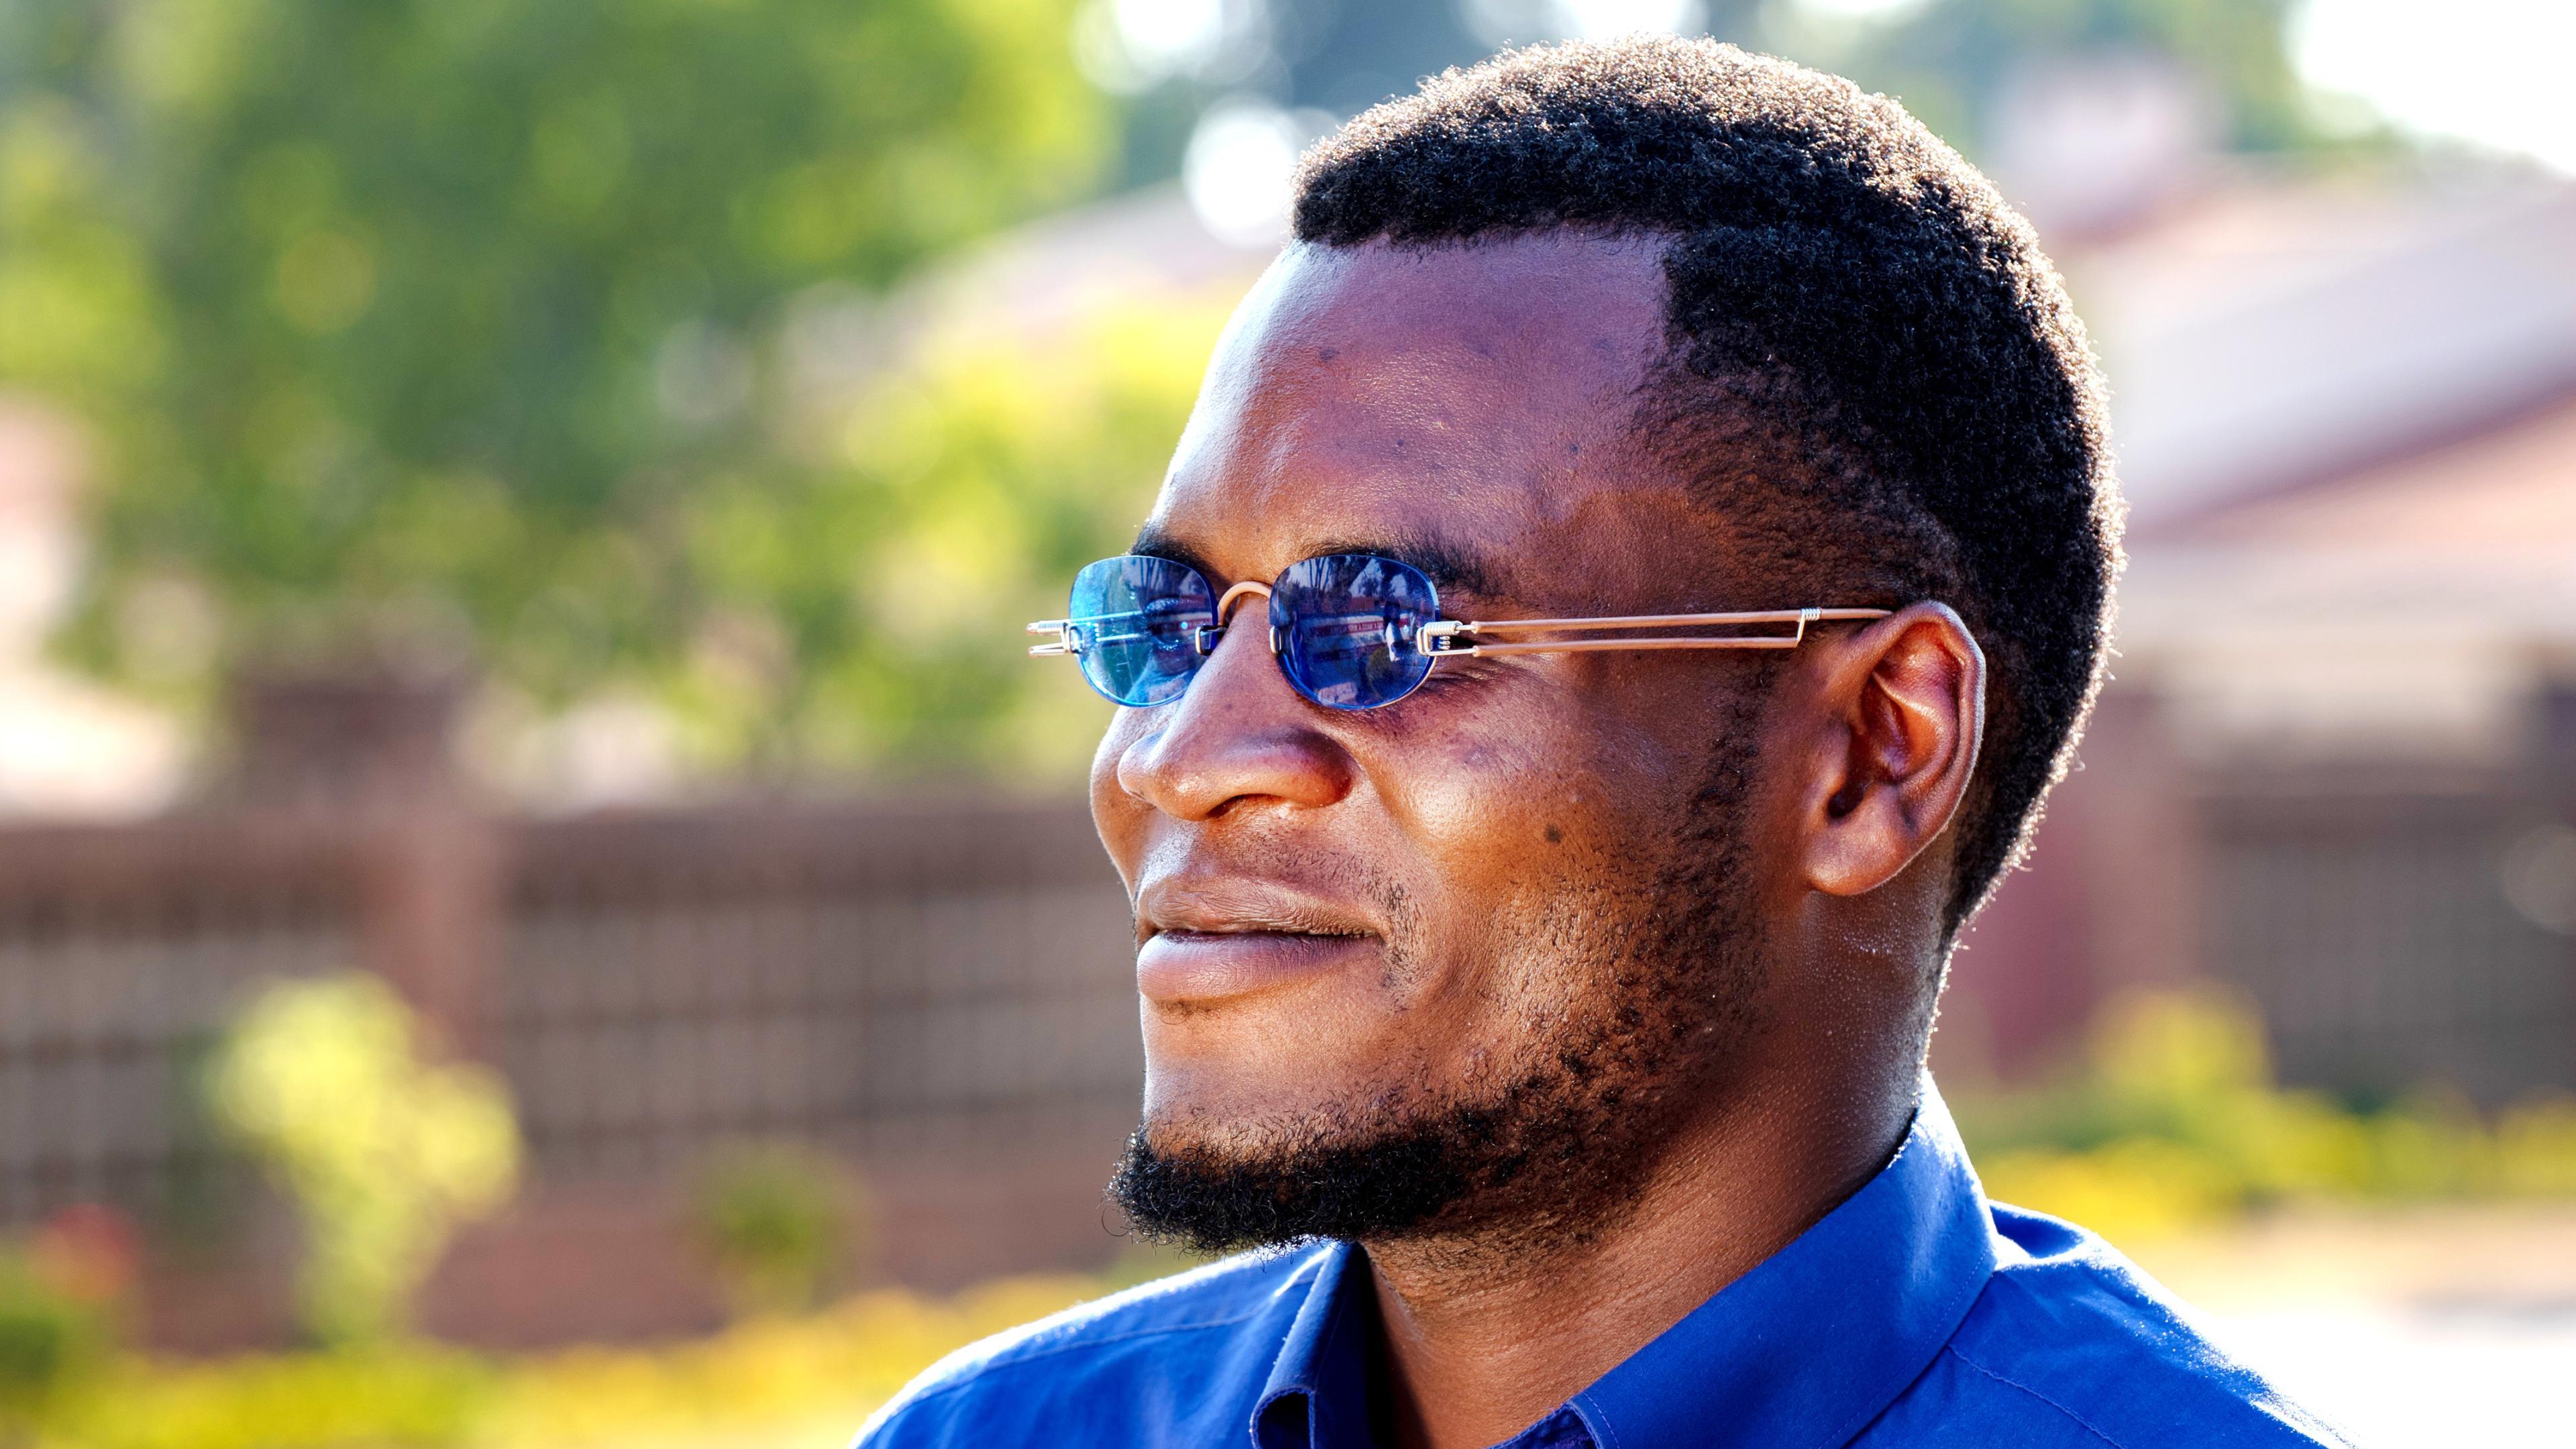 Malawischer Mann mit EinDollarBrille Sonnenbrille mit grossen Gläsern